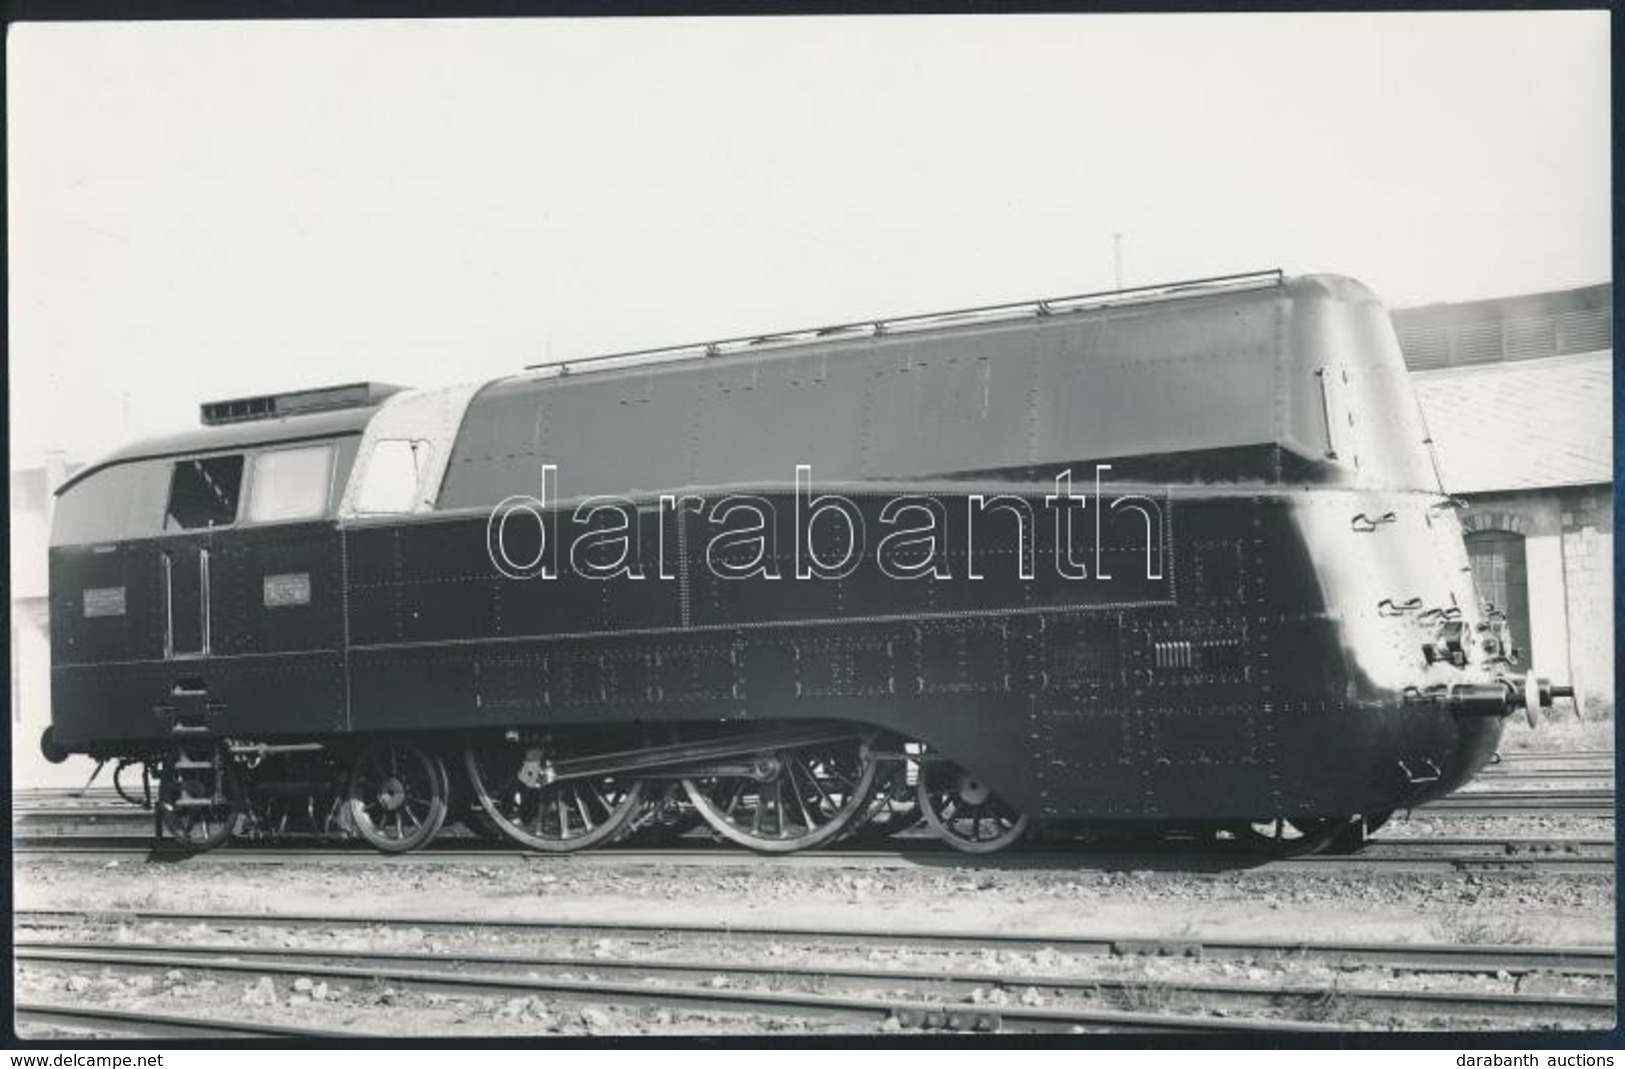 MÁVAG 242 Sorozatú Mozdony, Későbbi Előhívás, 14×23 Cm / MÁVAG Locomotive, Copy Of Vintage Photo - Other & Unclassified